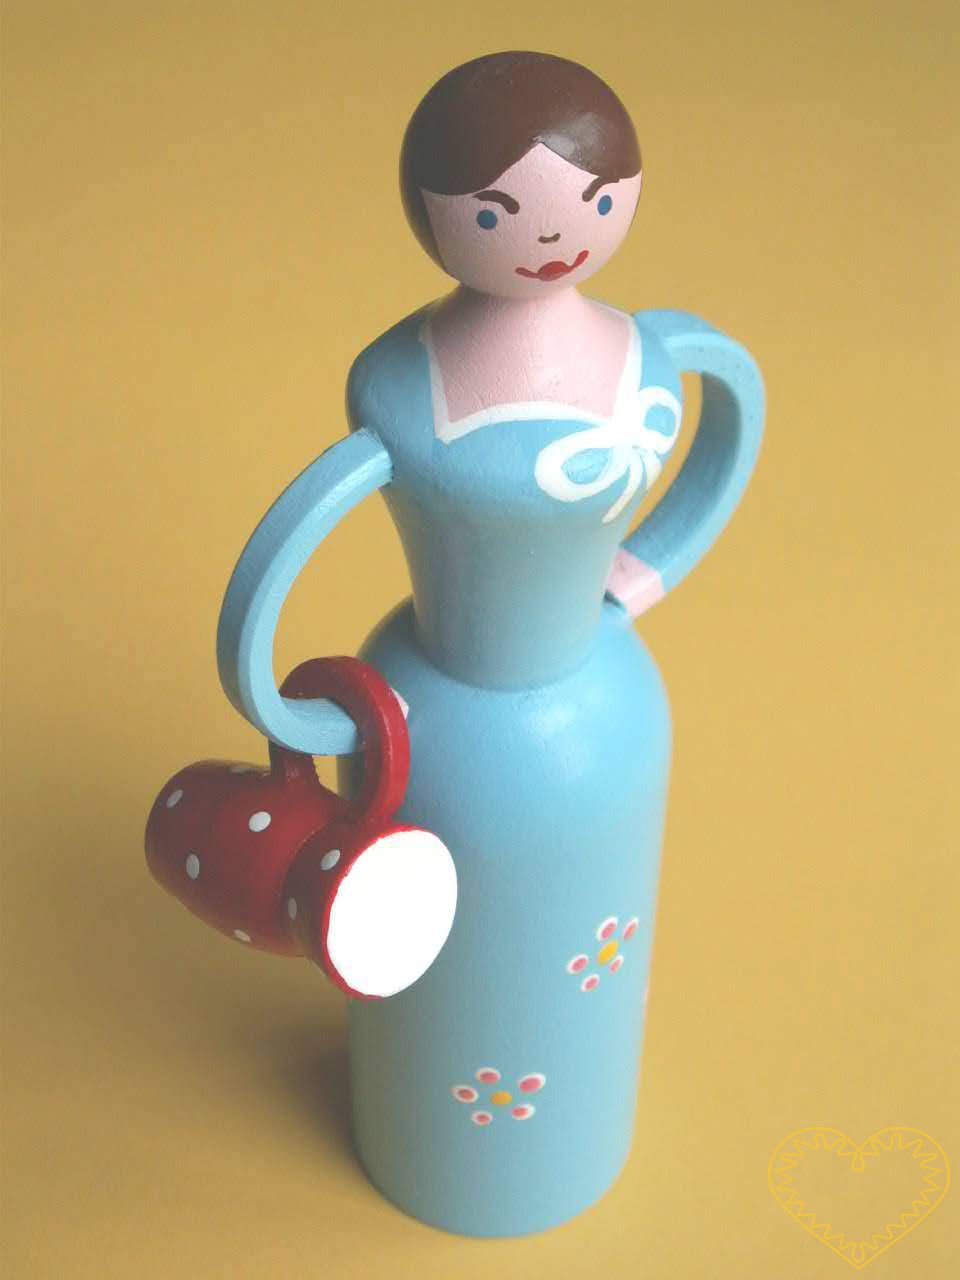 Dřevěná panenka se džbánkem. Krásně malovaný suvenýr vycházející ze vzorů tradičních dětských dřevěných hraček. Soustružená panenka má na jedné paži zavěšený dekorovaný džbánek.